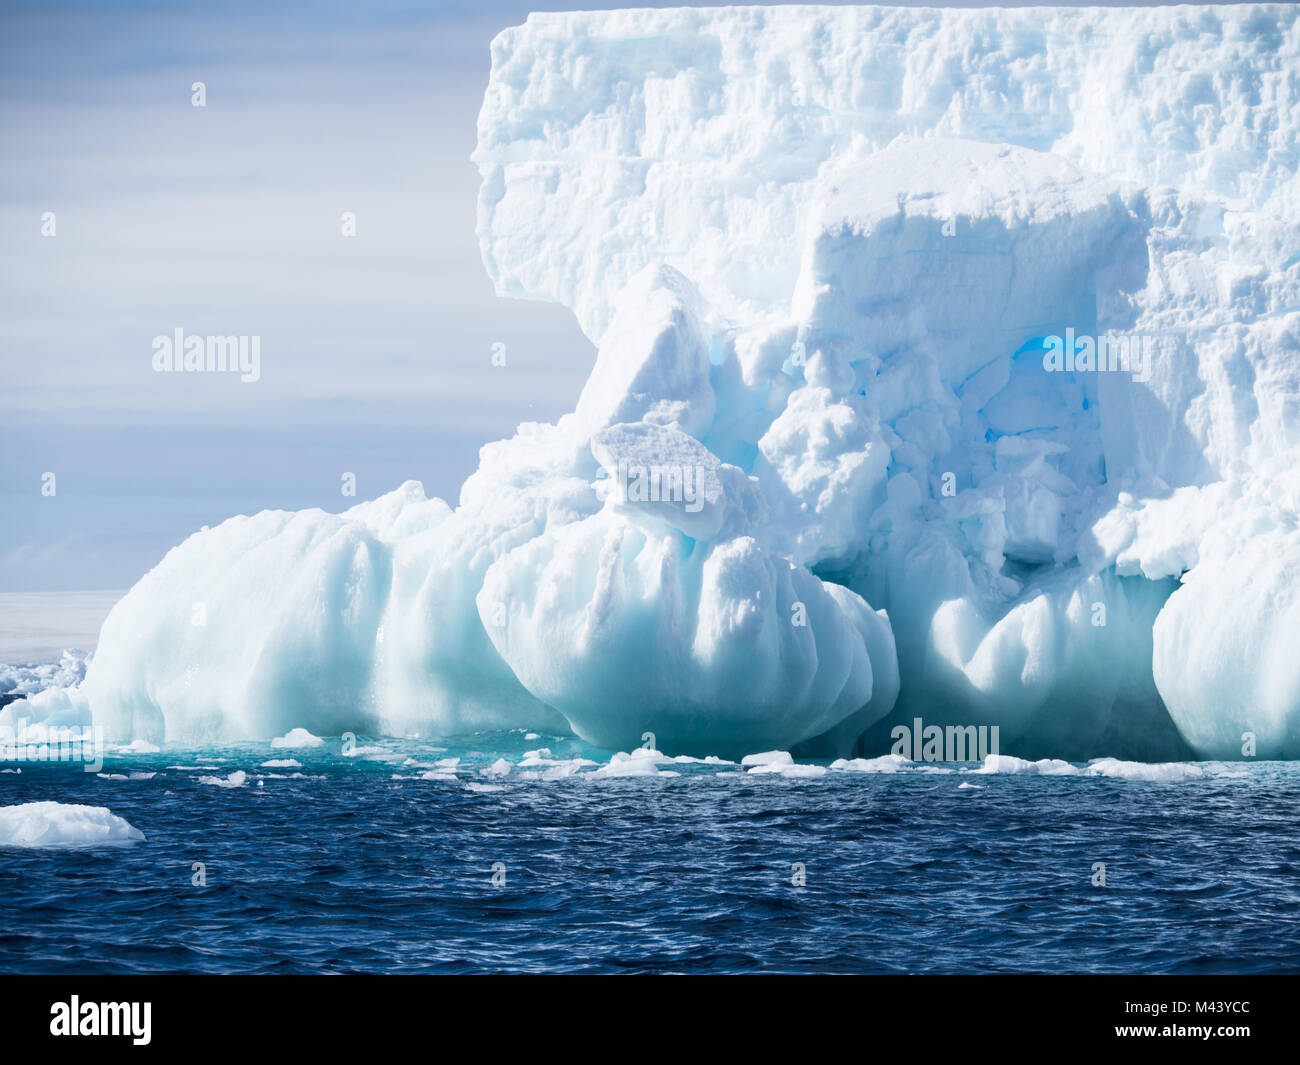 Un grand iceberg bleu clair avec une fondation de sphères. L'eau bleu foncé de l'océan Austral a petites rides. ciel nuageux au-dessus. Banque D'Images